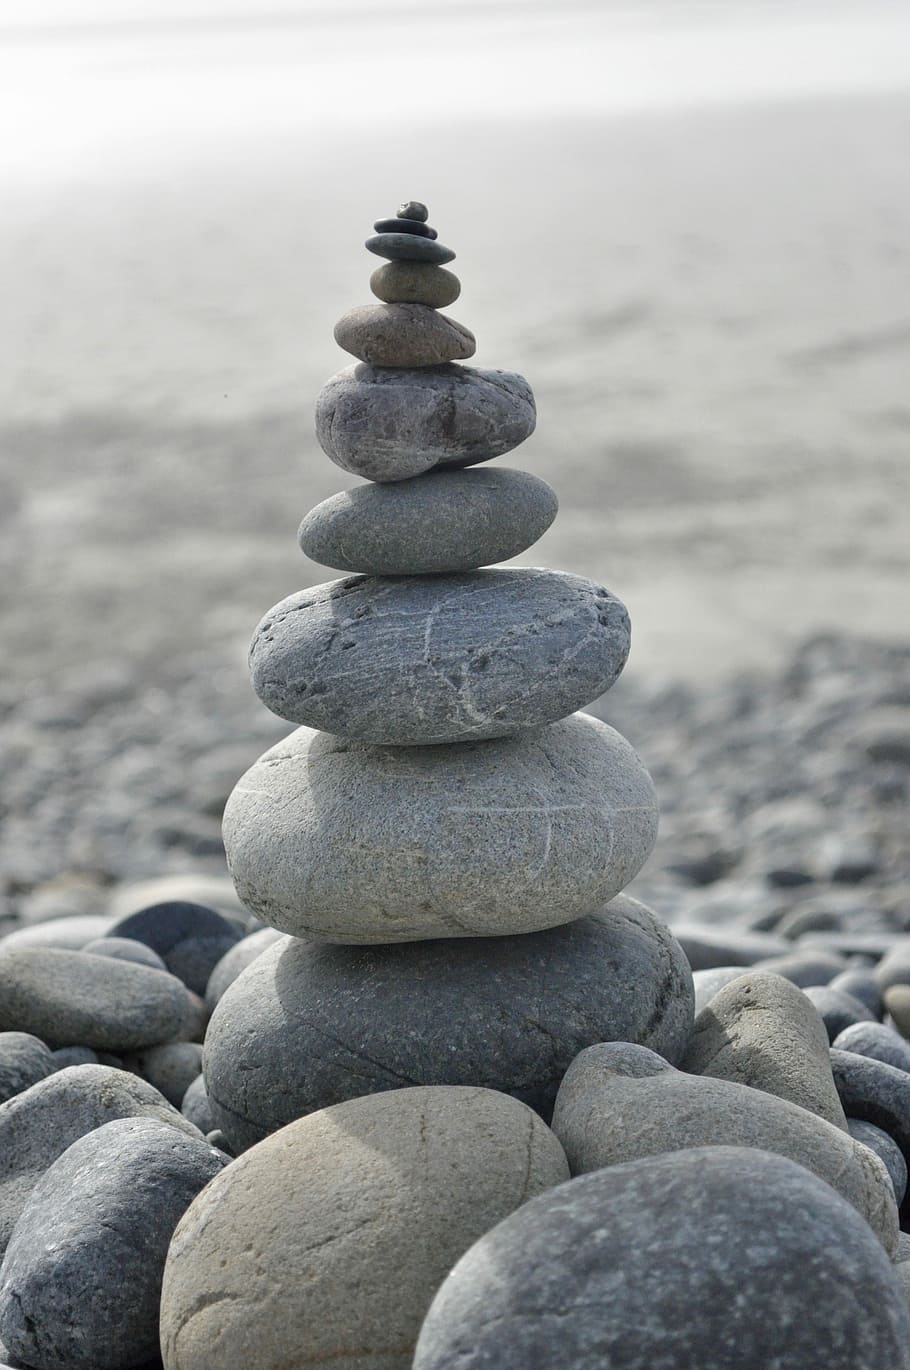 pilha de pedras, estabilidade, equilíbrio, paralelepípedos, harmonia, meditação, rocha, pedra, ordem, suave